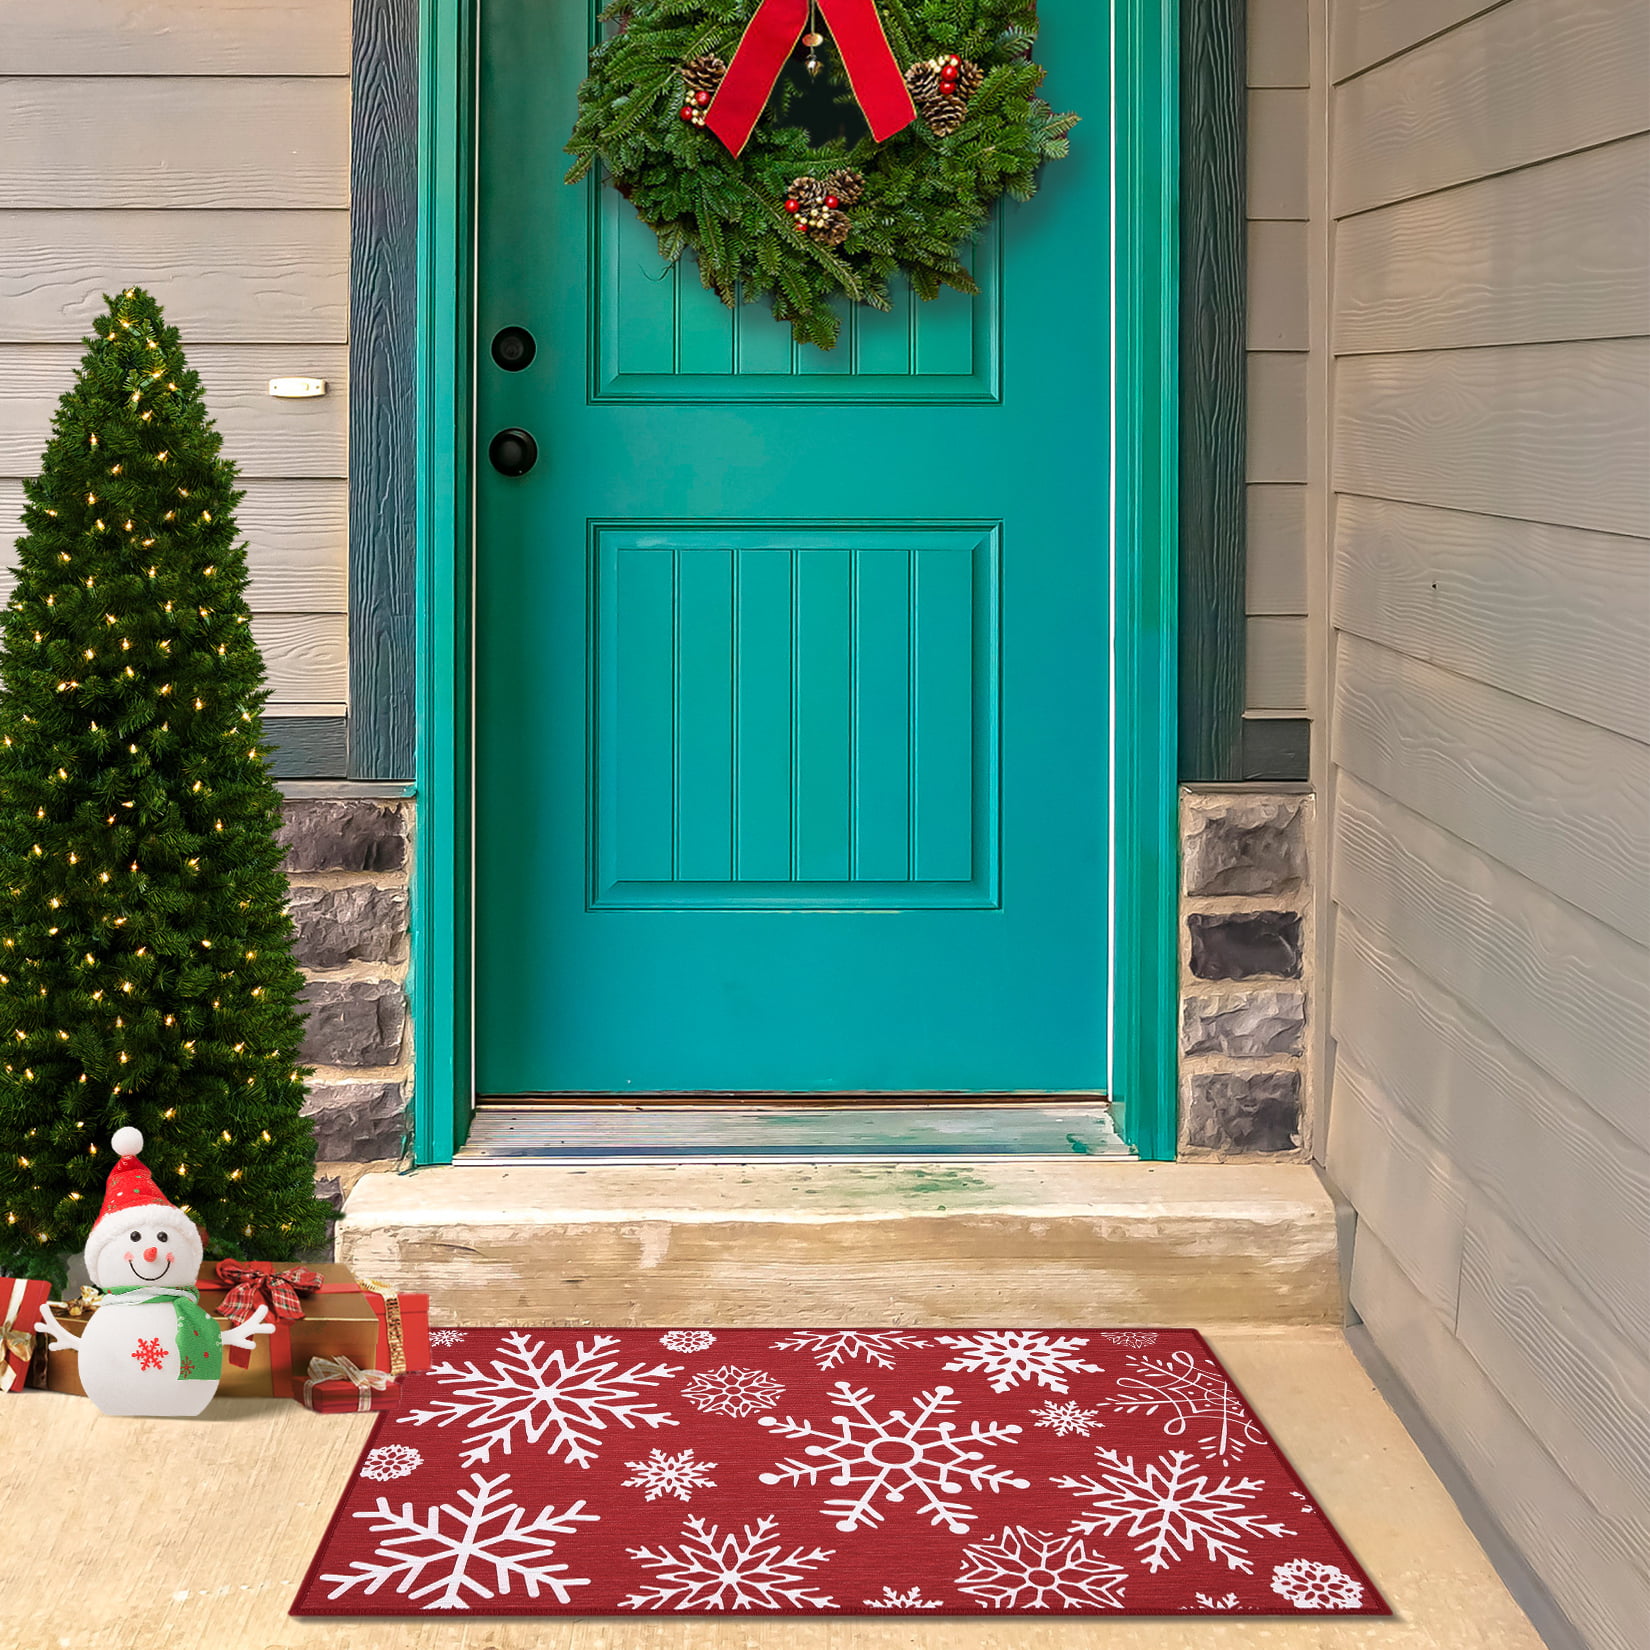  AerWo Christmas Door Mat Outdoor Welcome Mats Indoor for Front  Door, Christmas Doormat with Non-Slip PVC Backing, 30'' x 17'' Winter  Doormat for Home Bath Kitchen Entrance Front Door Floor Mat 